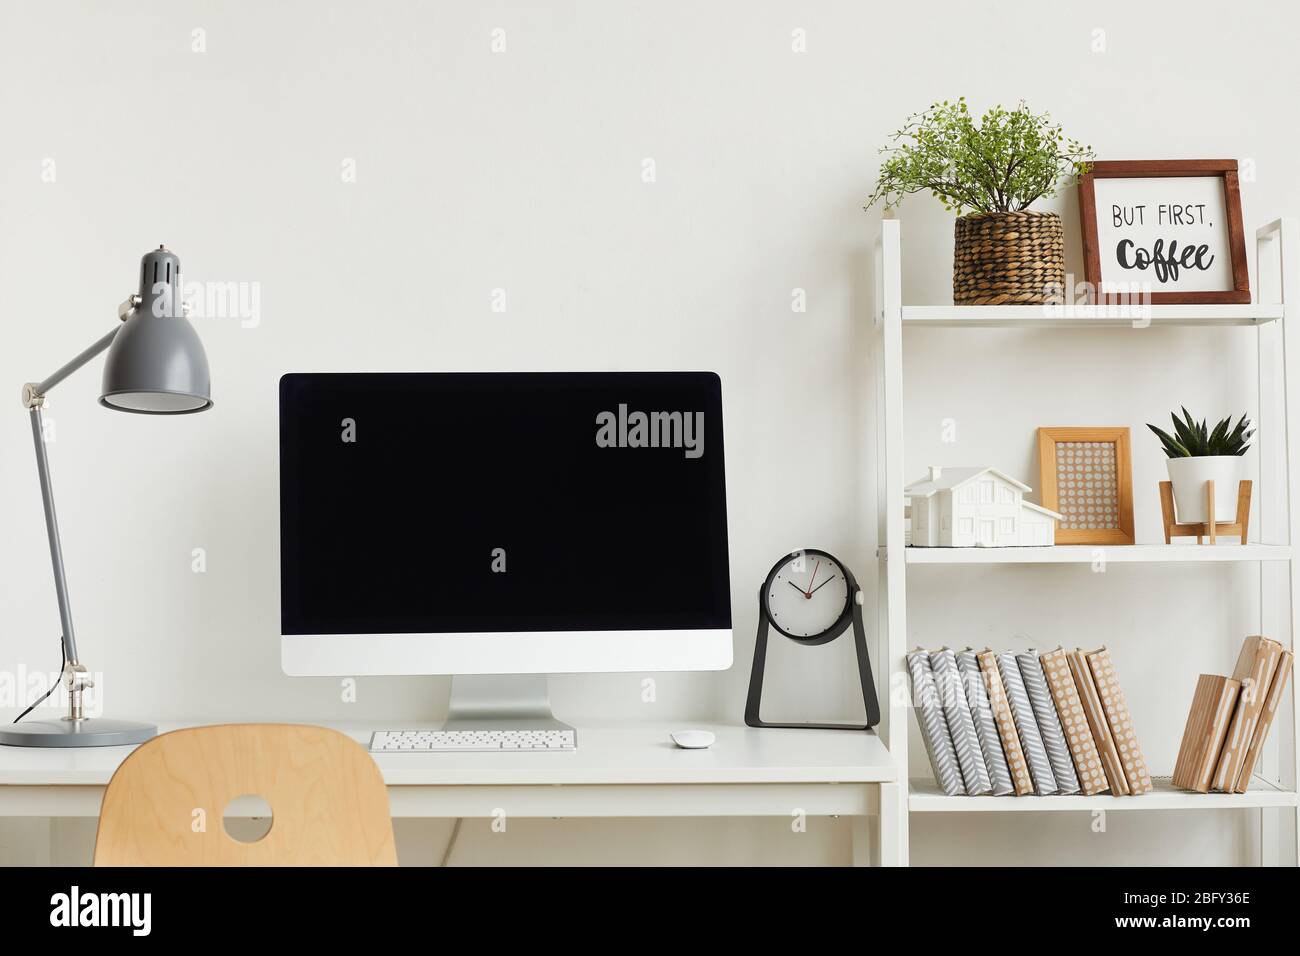 Hintergrundbild eines modernen Computers auf dem Schreibtisch vor weißer  Wand im Home Office Innenraum, Kopierraum oben Stockfotografie - Alamy